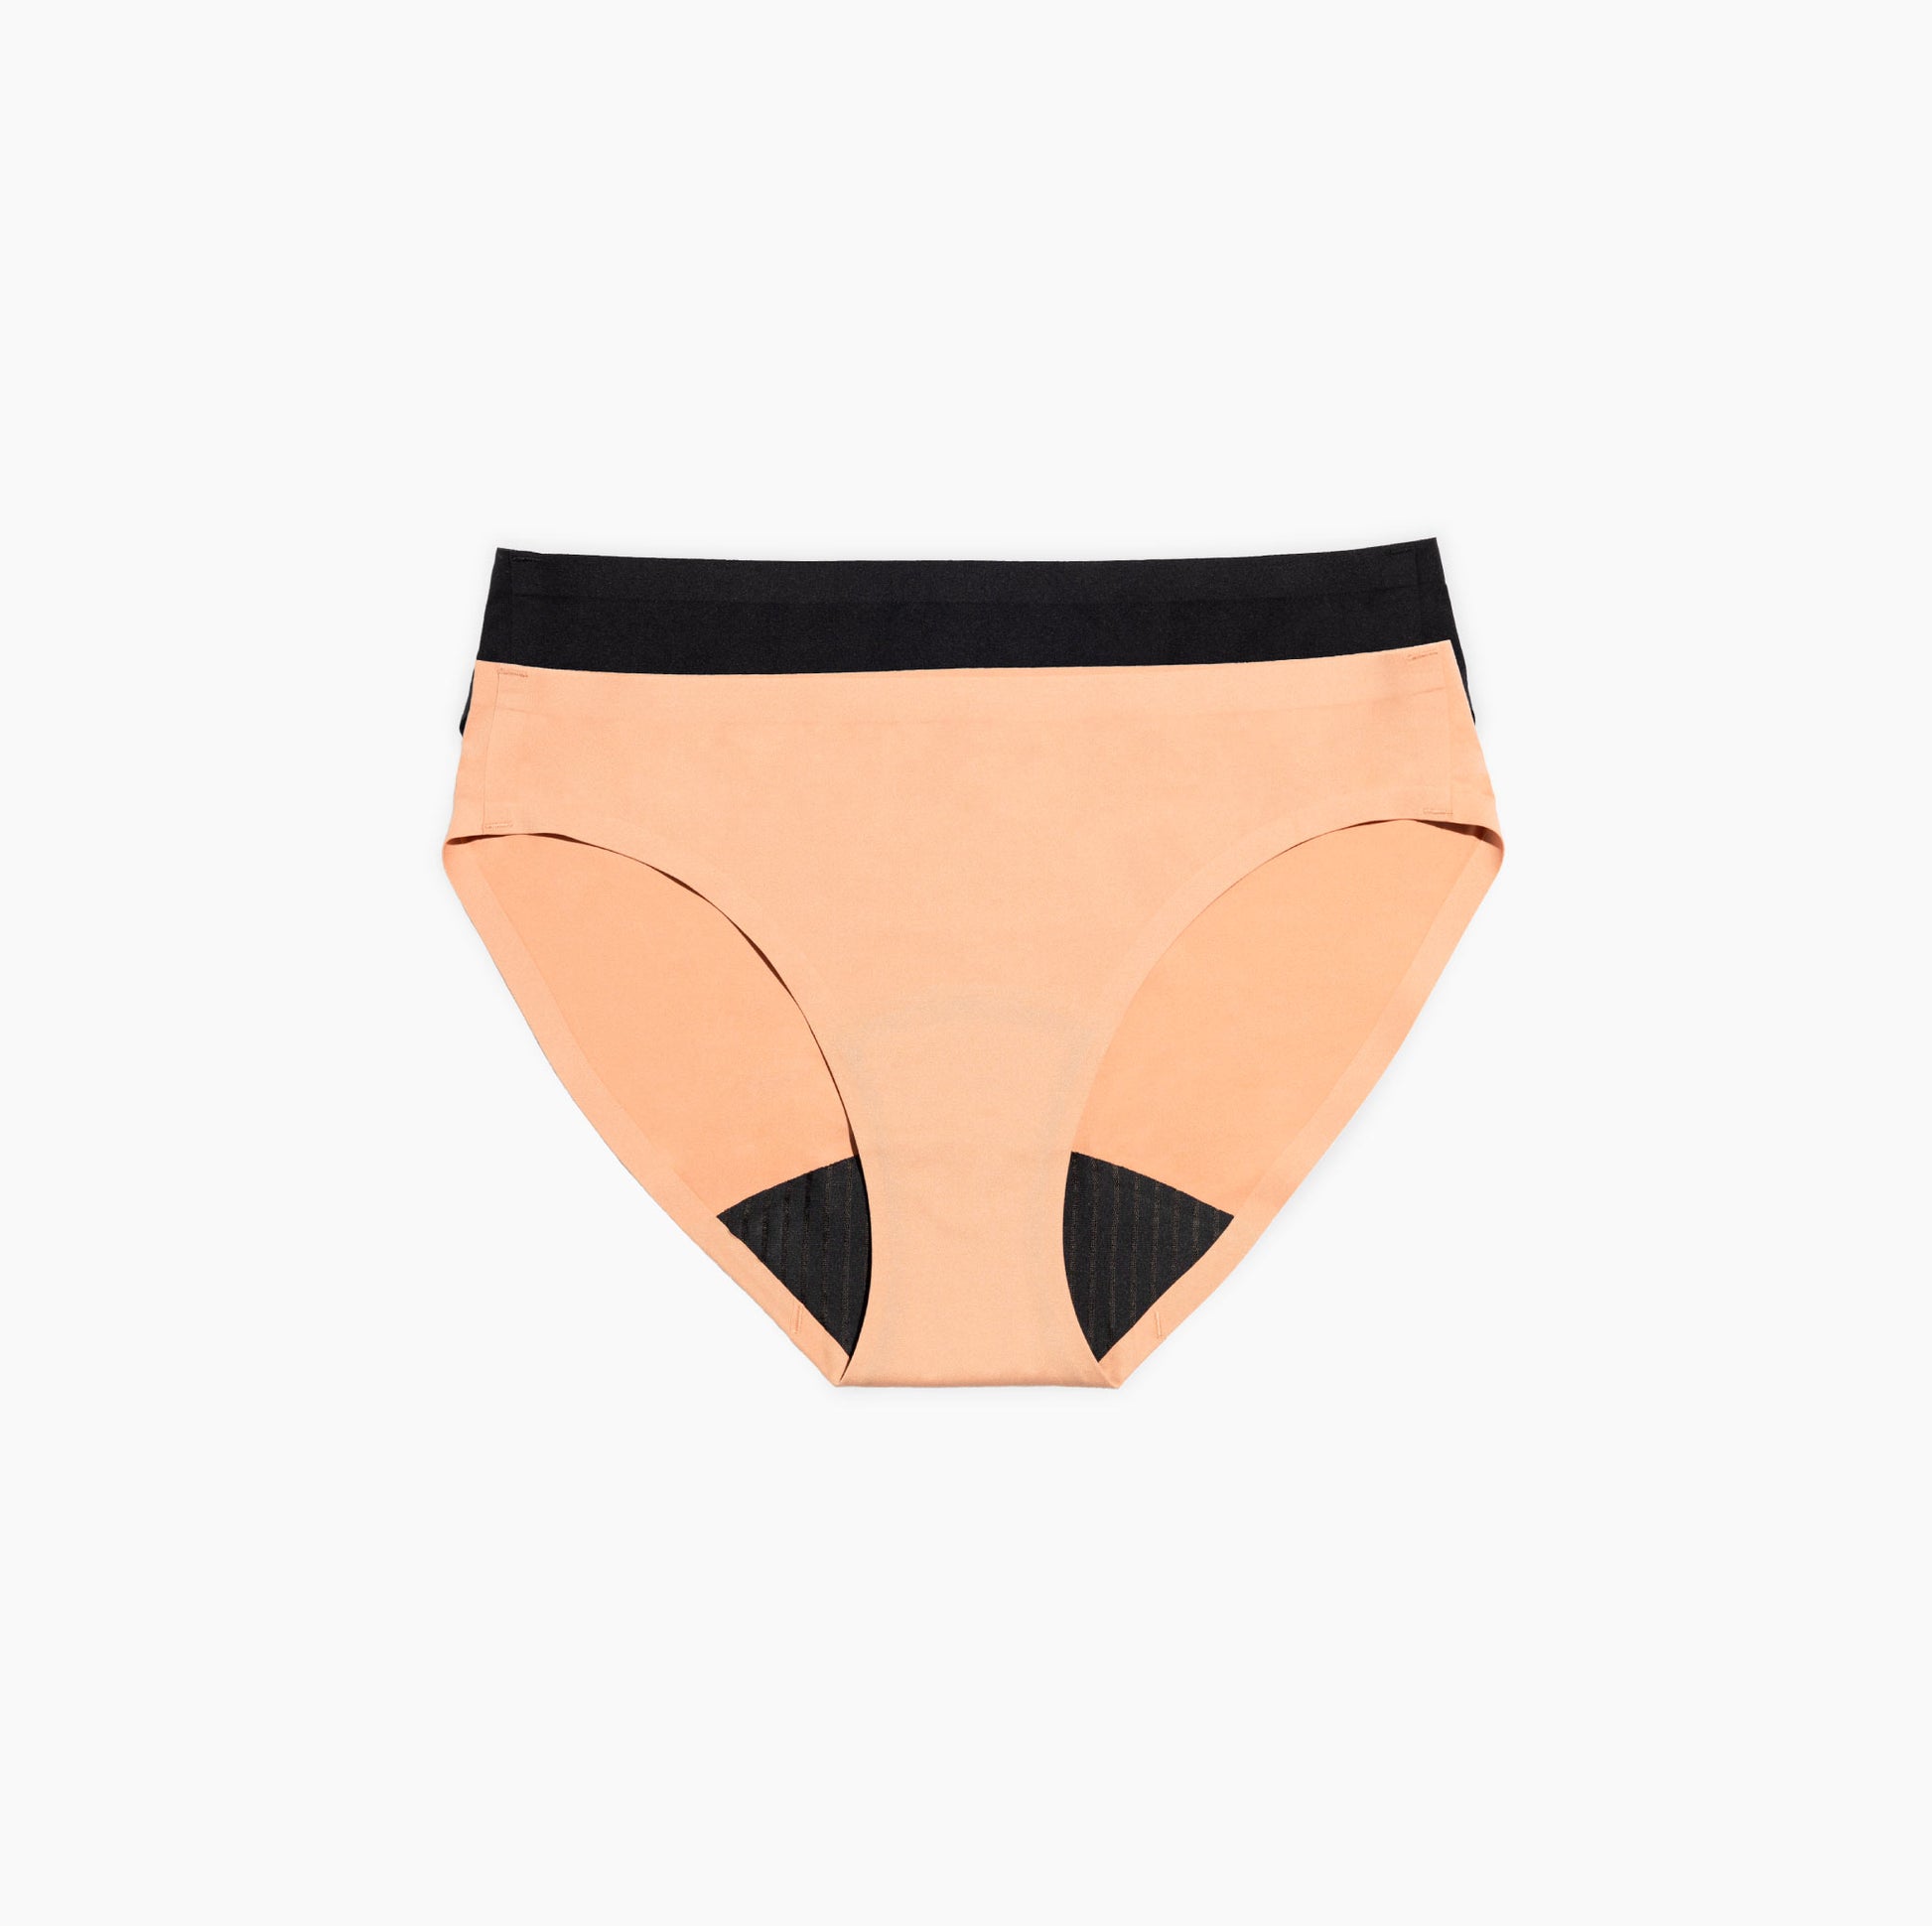  TIICHOO Period Underwear Seamless Incontinence Underwear  Bikini Period Panties Leak Proof Underwear For Women 30ml Absorbency 1 Pack